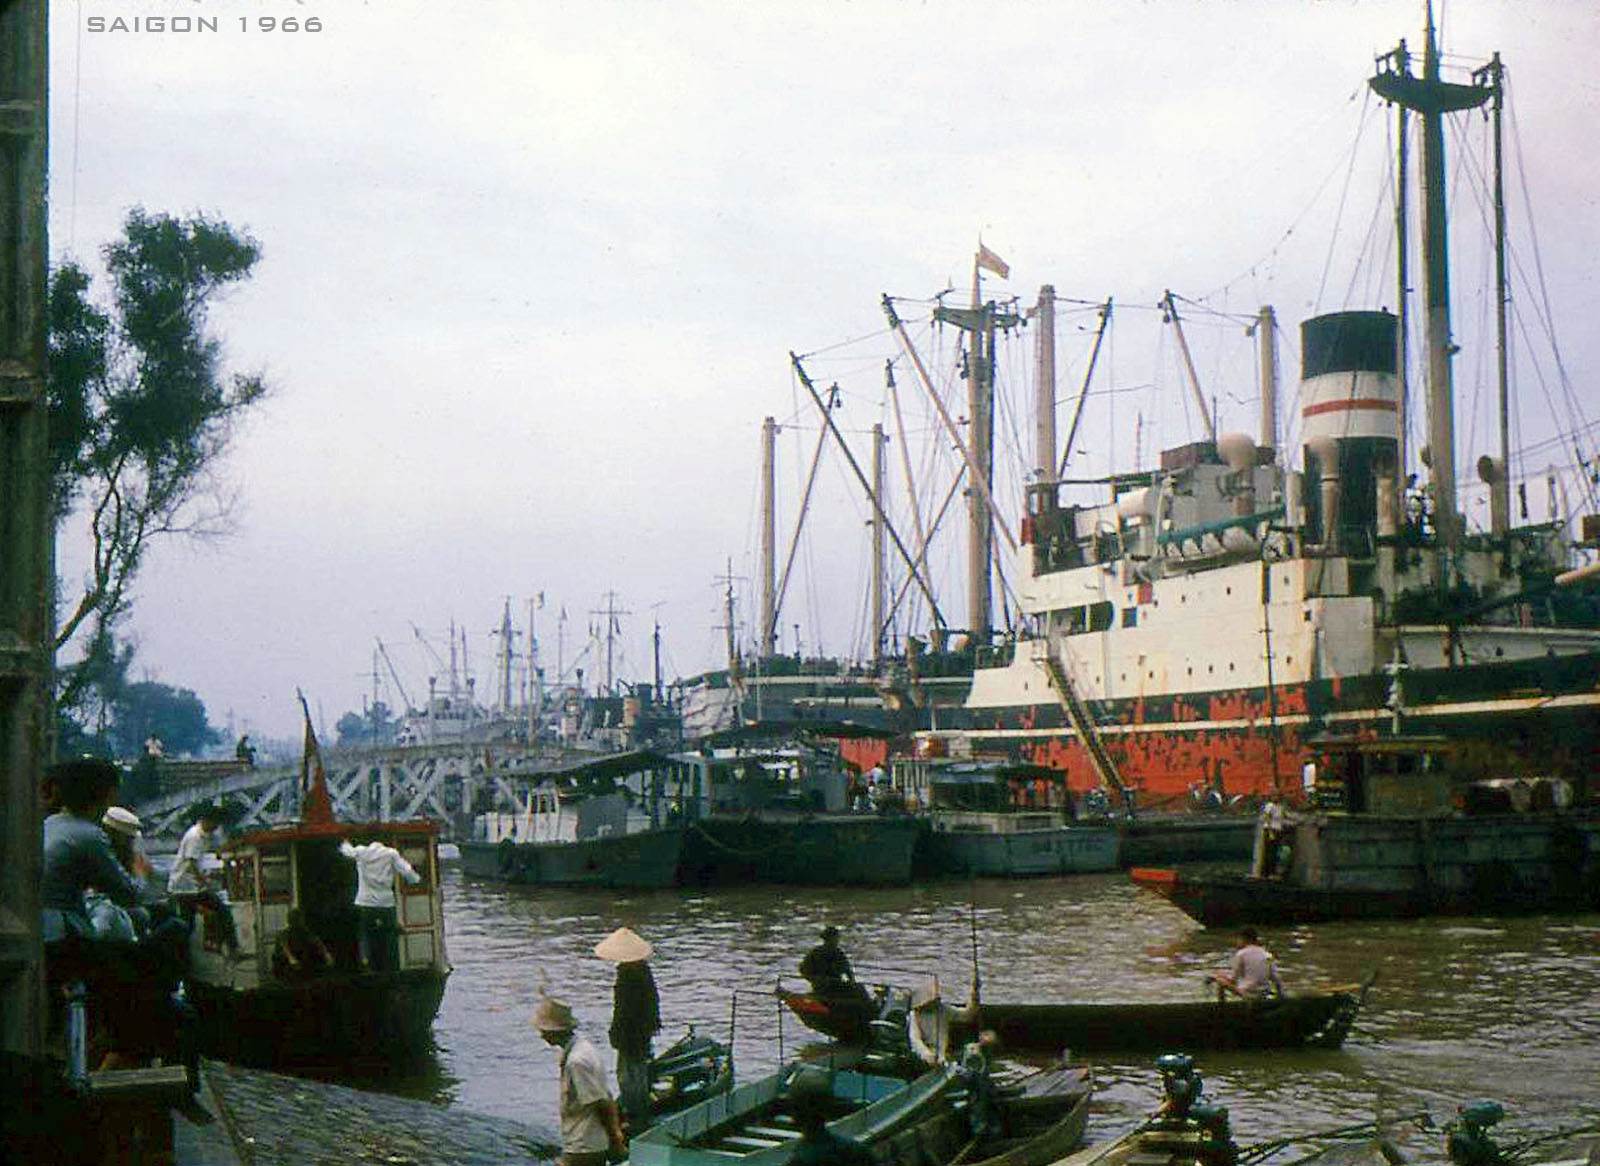 Thuyền tàu neo đậu trên sông Sài Gòn ở Bến Bạch Đằng